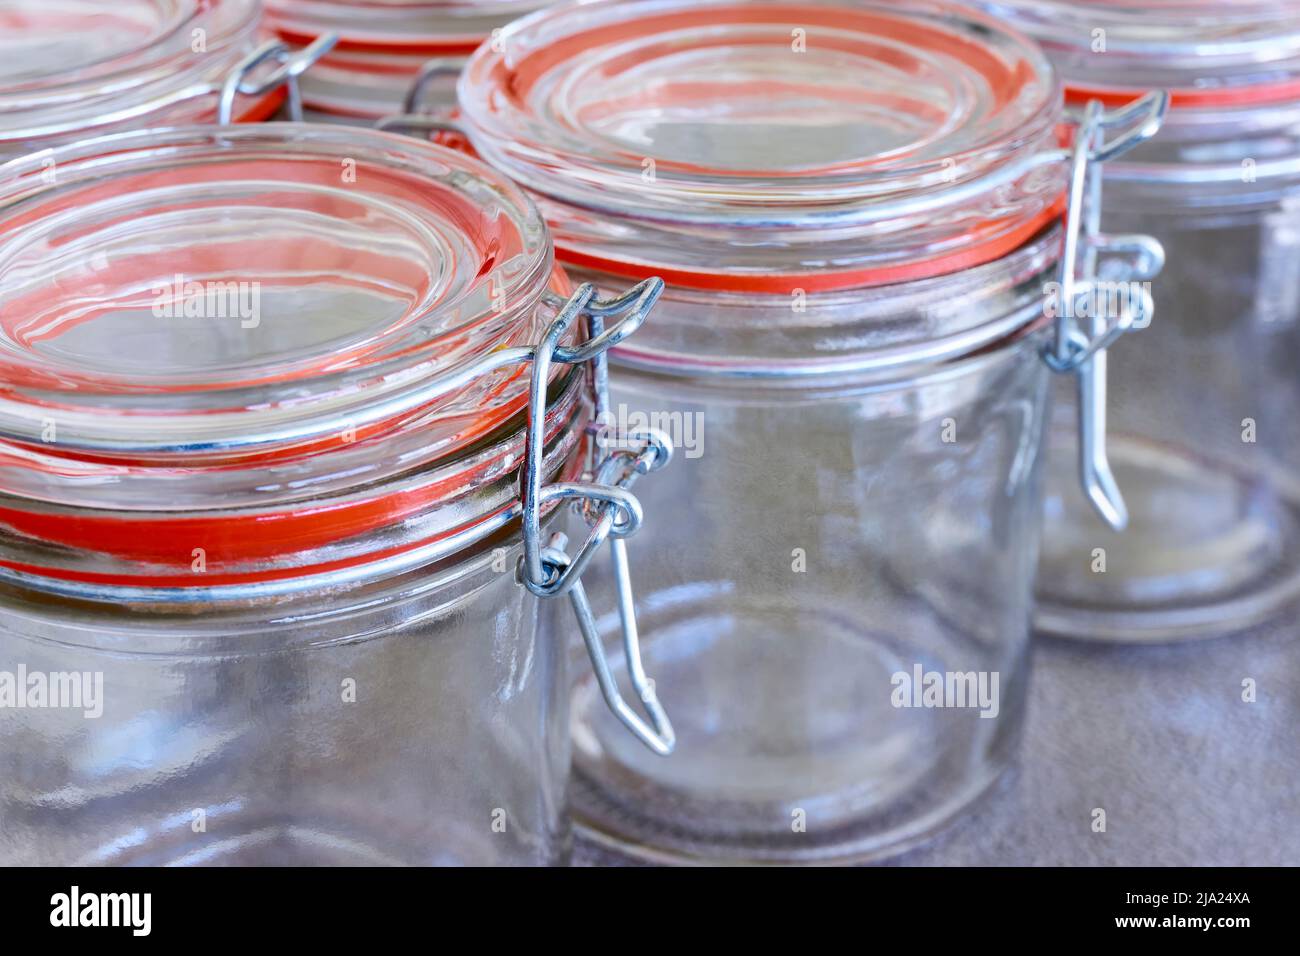 Nahaufnahme von leeren Gläsern oder Konservierbehältern mit orangefarbenem Verschlussring in einer Reihe. Konzept zur Erhaltung von Lebensmitteln. Stockfoto